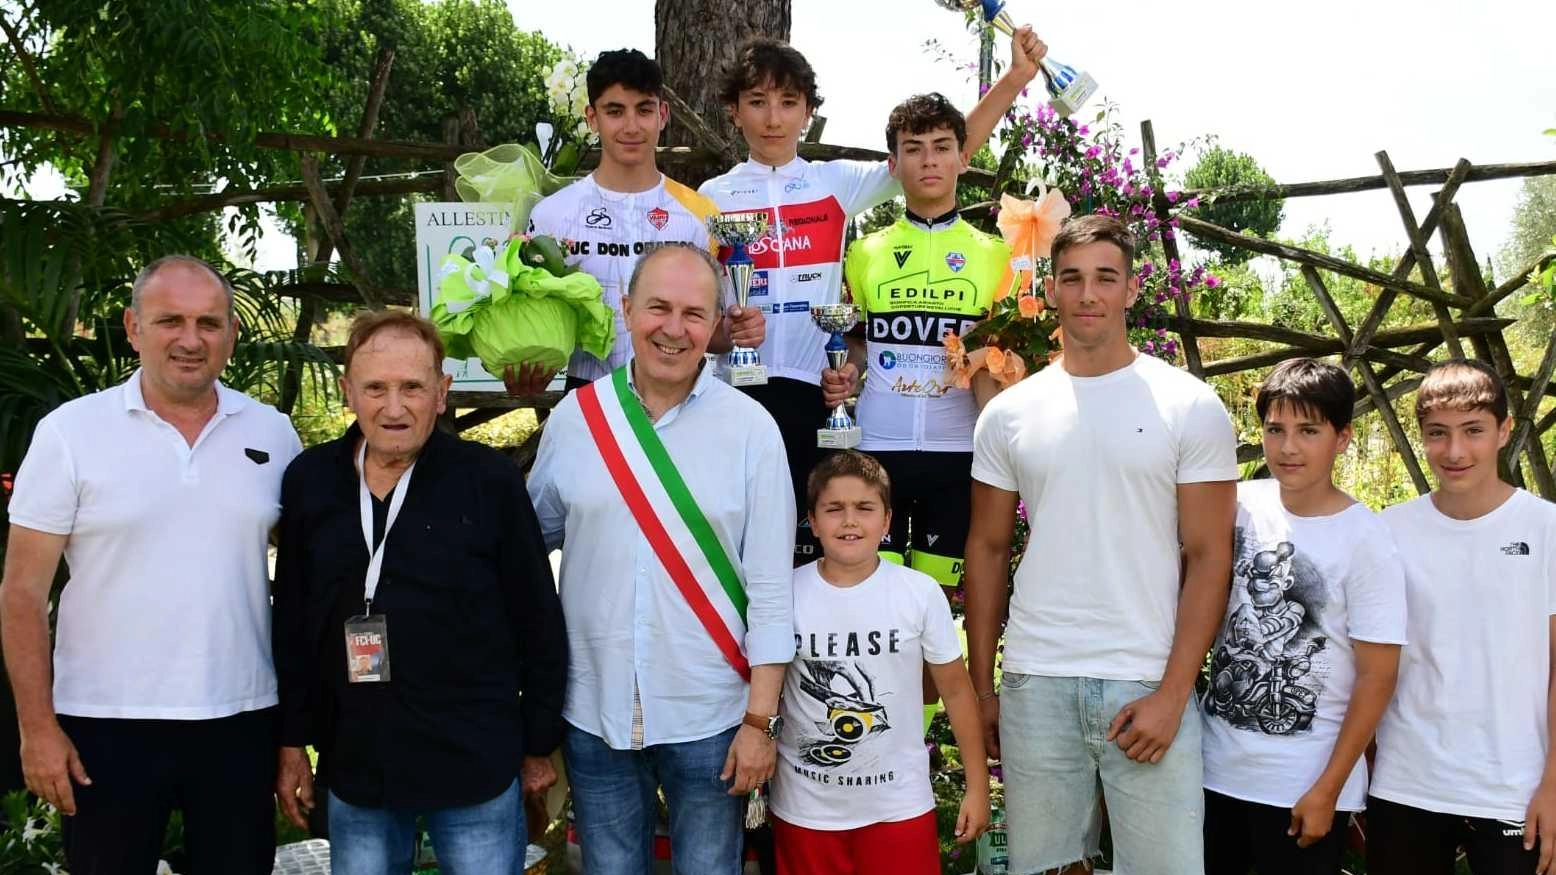 La Ciclistica Mobilieri Ponsacco ha organizzato con successo i Campionati Toscani esordienti, con partecipazione da tutta la regione. Vittorie per Iacopi e Menici.